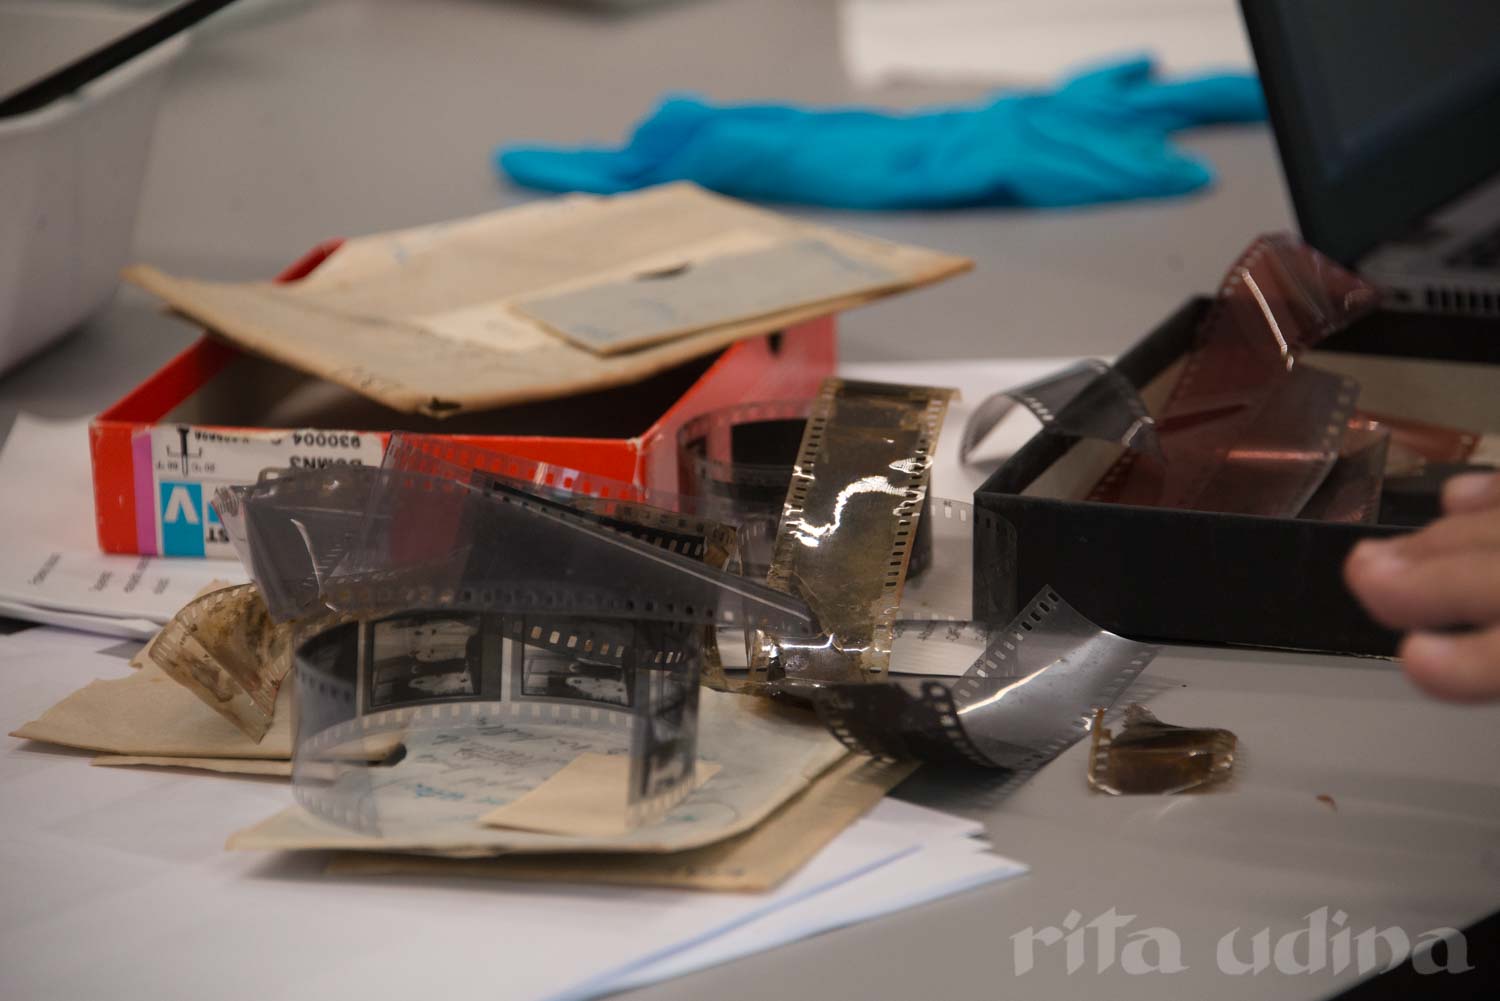 Identificació de pel·lícules fílmiques: acetats, nitrats, polièsters. Curs "Identificació, conservació i restauració de fotografies" al Museu Nacional de Noruega.